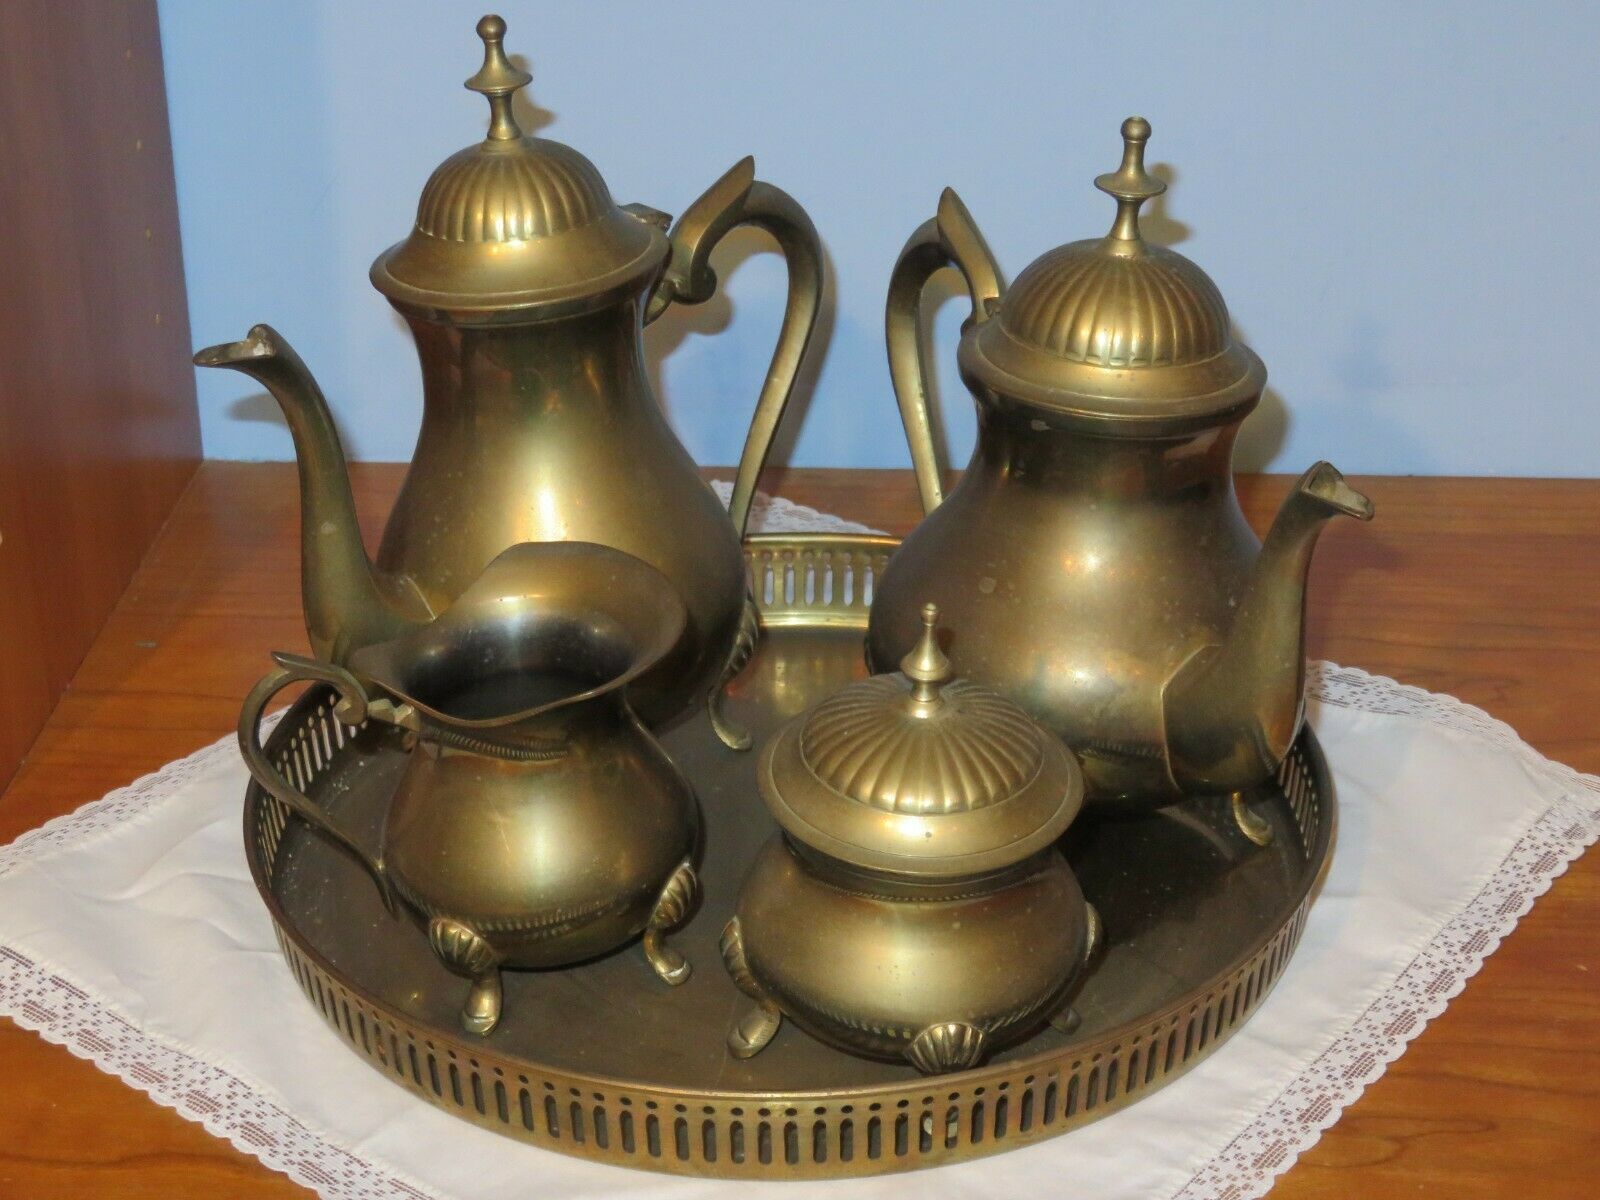 Heavy Brass Decorative Tea Service - Six Pieces - India